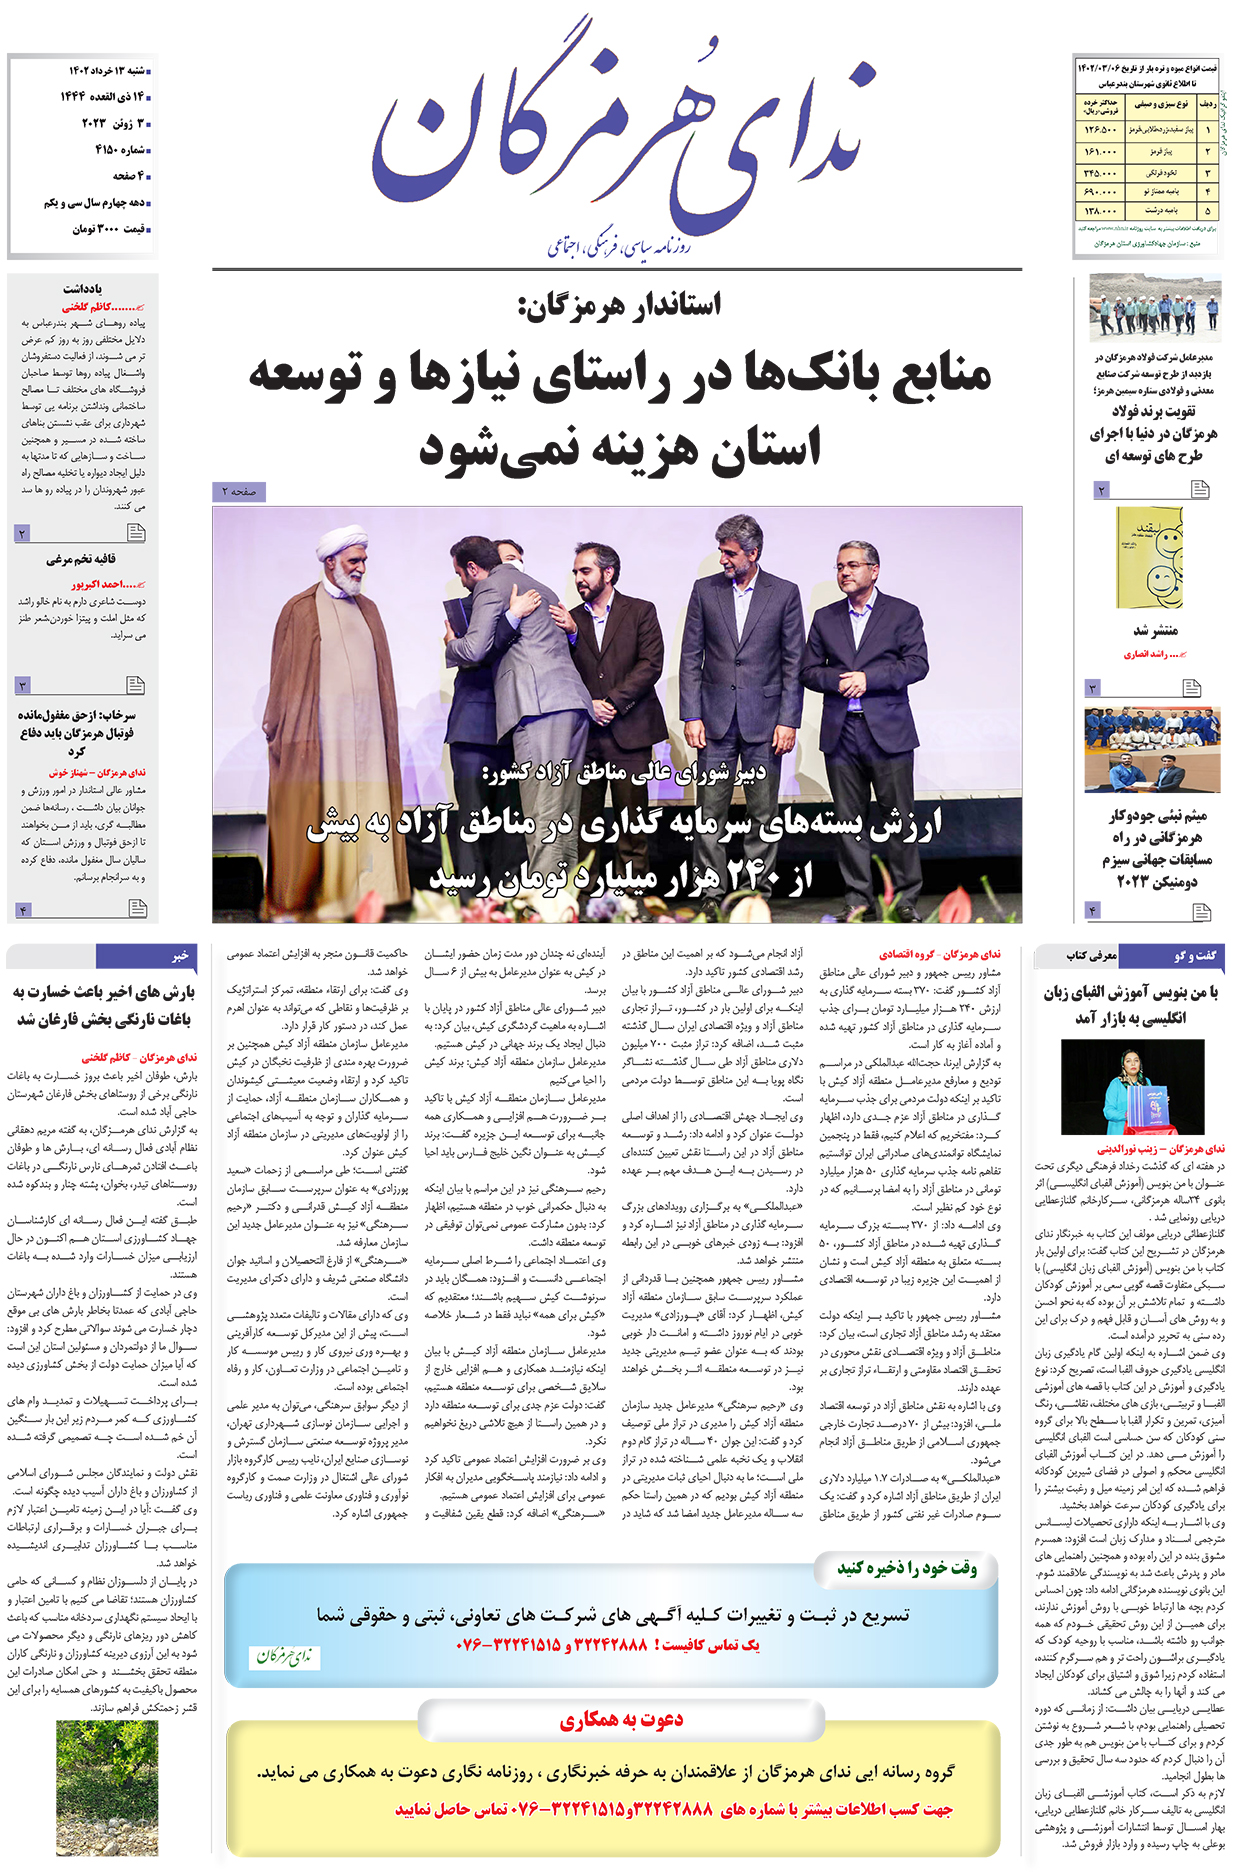 11 2 - رئیس سازمان جهادکشاورزی استان در پاسخ به  ندای هرمزگان؛  بیش از 42 هزار مورد بازرسی از ابتدای سال جاری انجام شده است